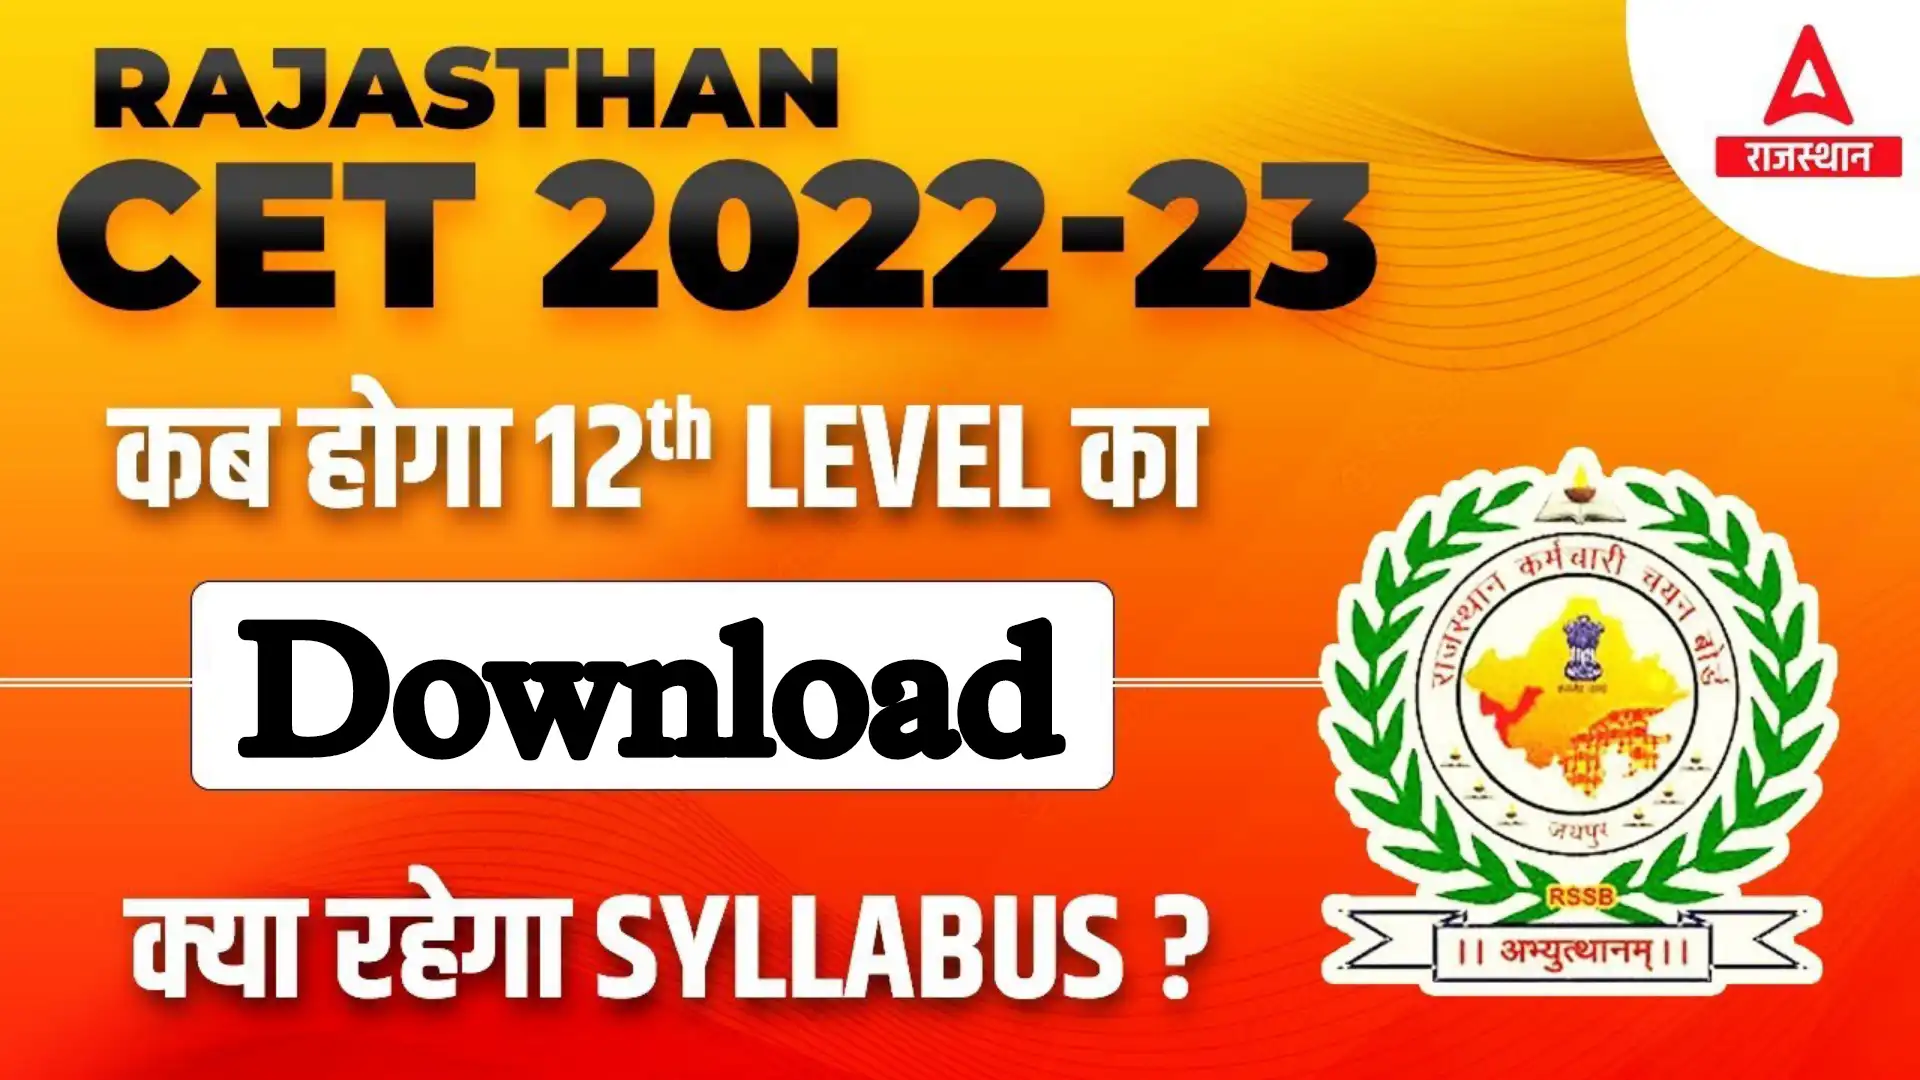 Rajasthan CET Senior Secondary Syllabus 2022 PDF Download in Hindi राजस्थान सीईटी 10th +2 पास के लिए सिलेबस जारी